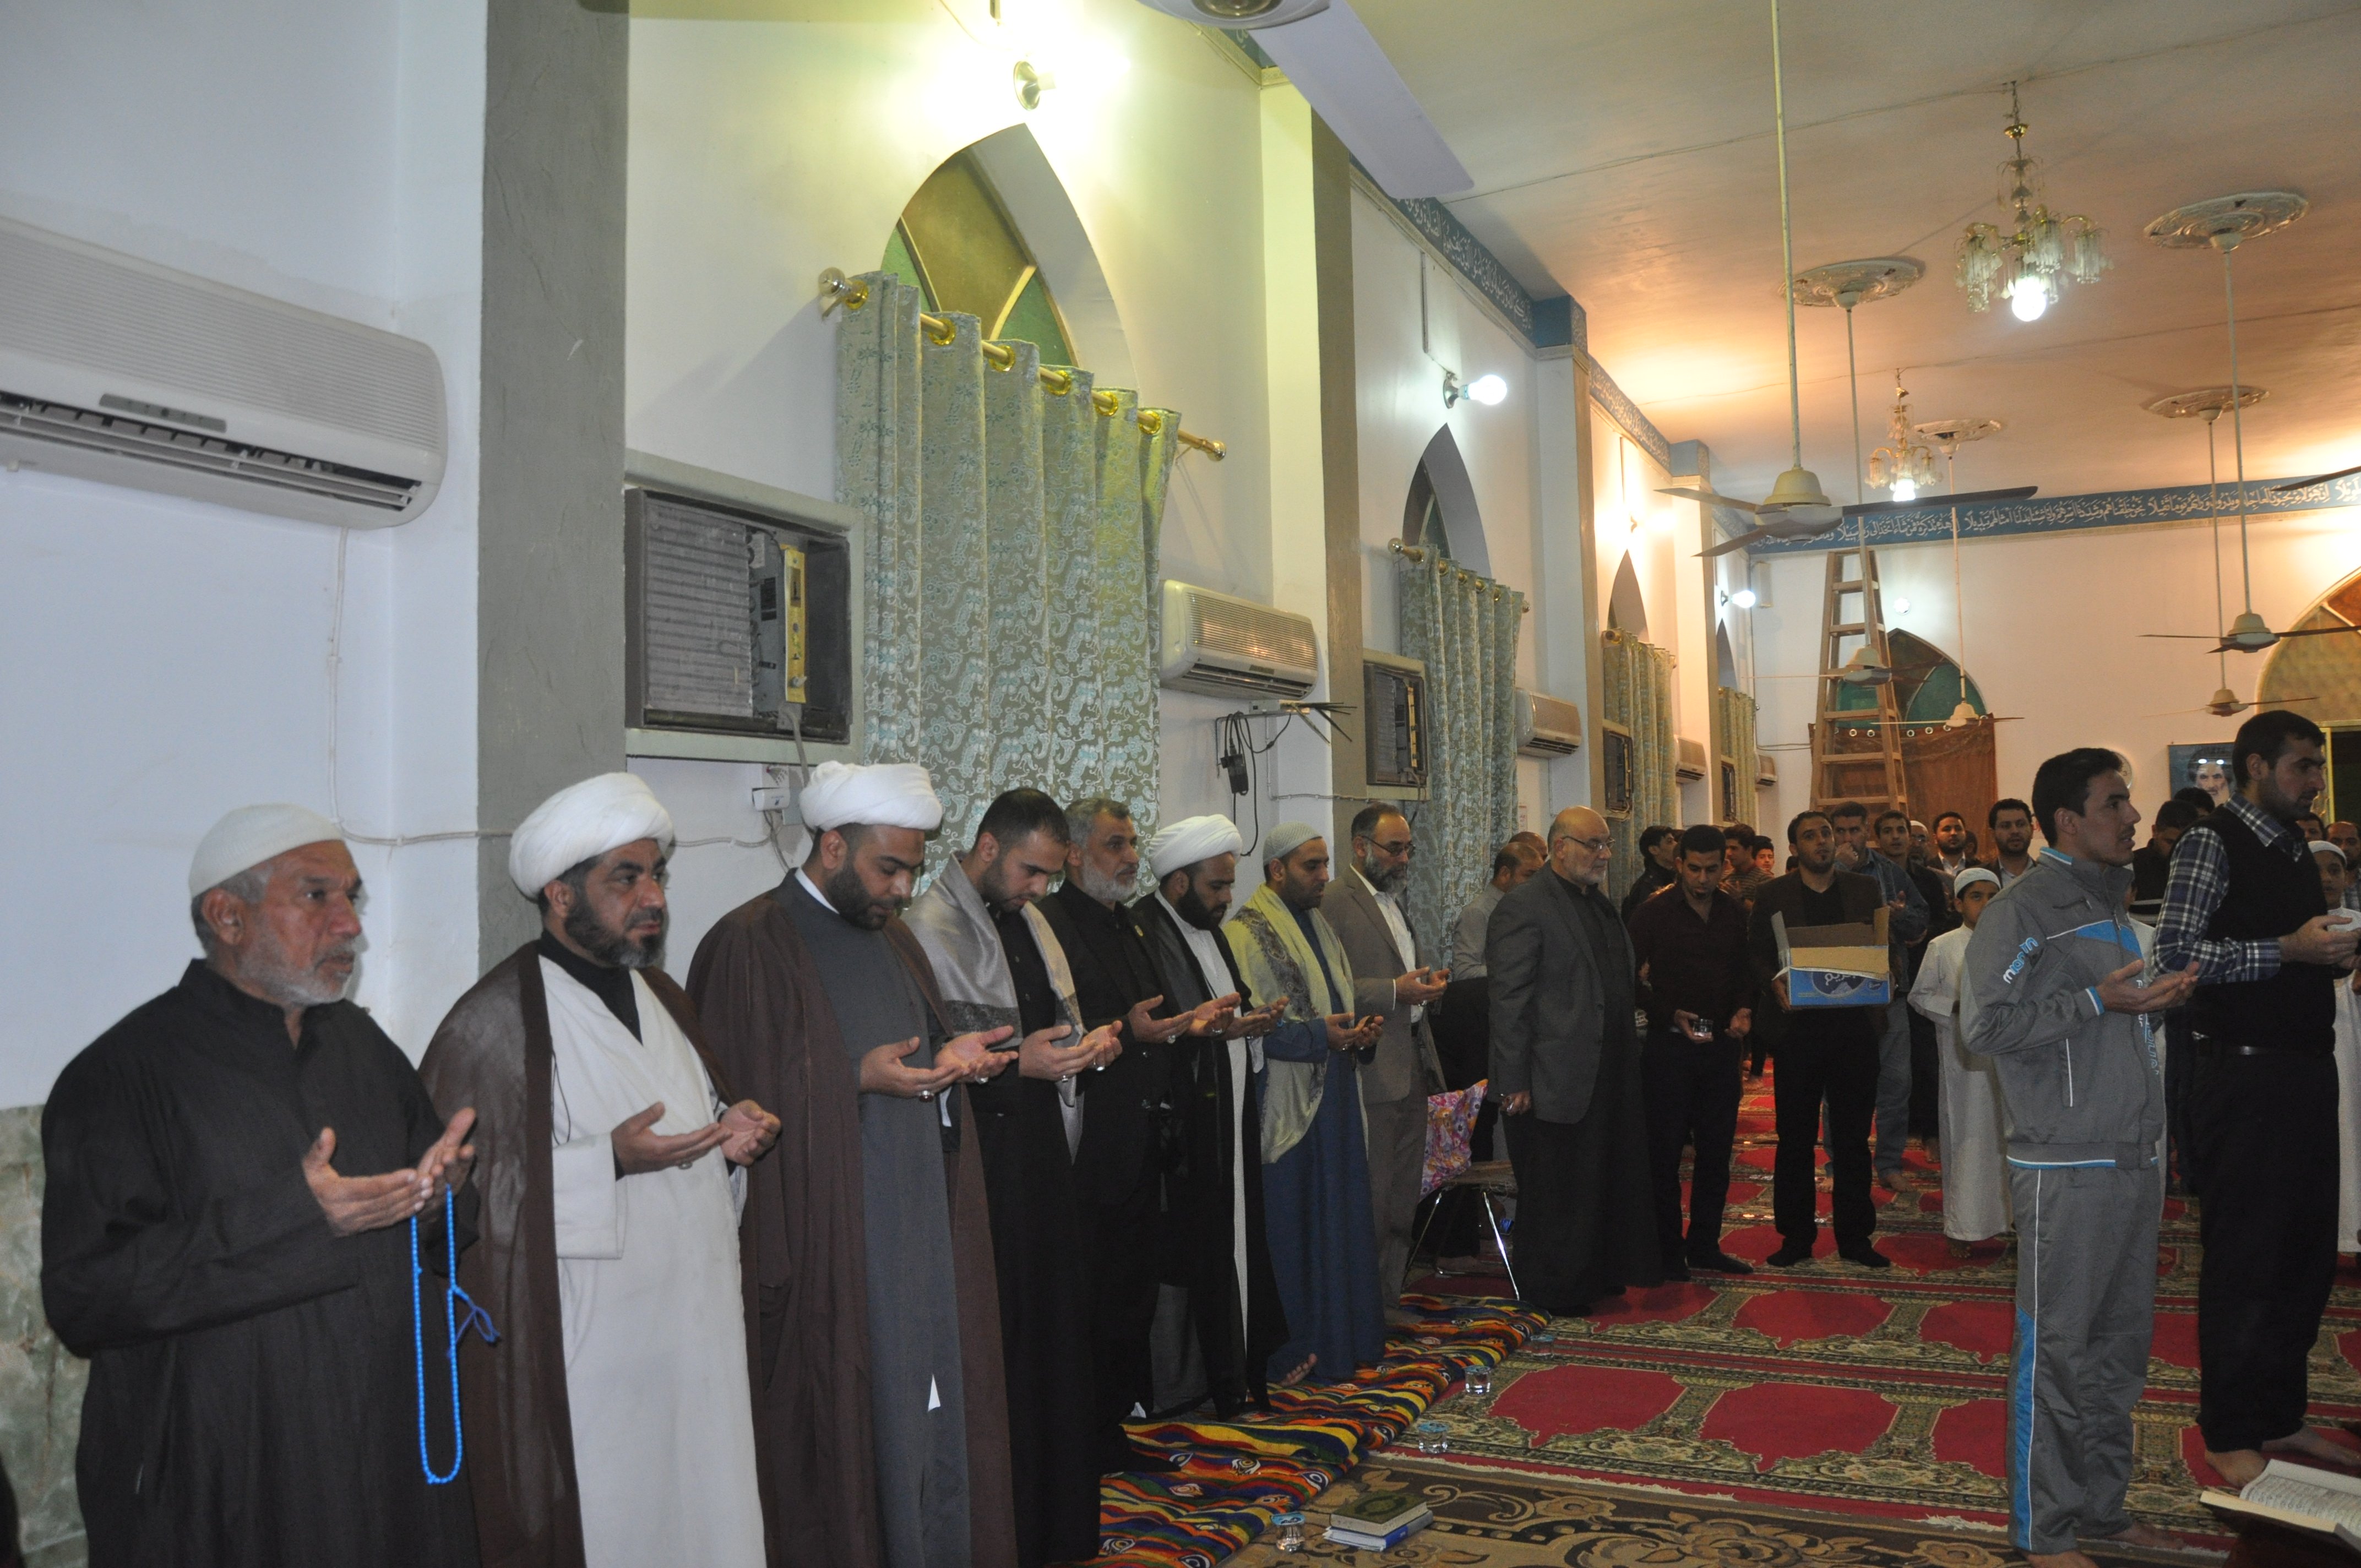 معهد القرآن الكريم فرع بغداد الشَّعب يُقيم محفلاً قرآنيًّا مُباركًا